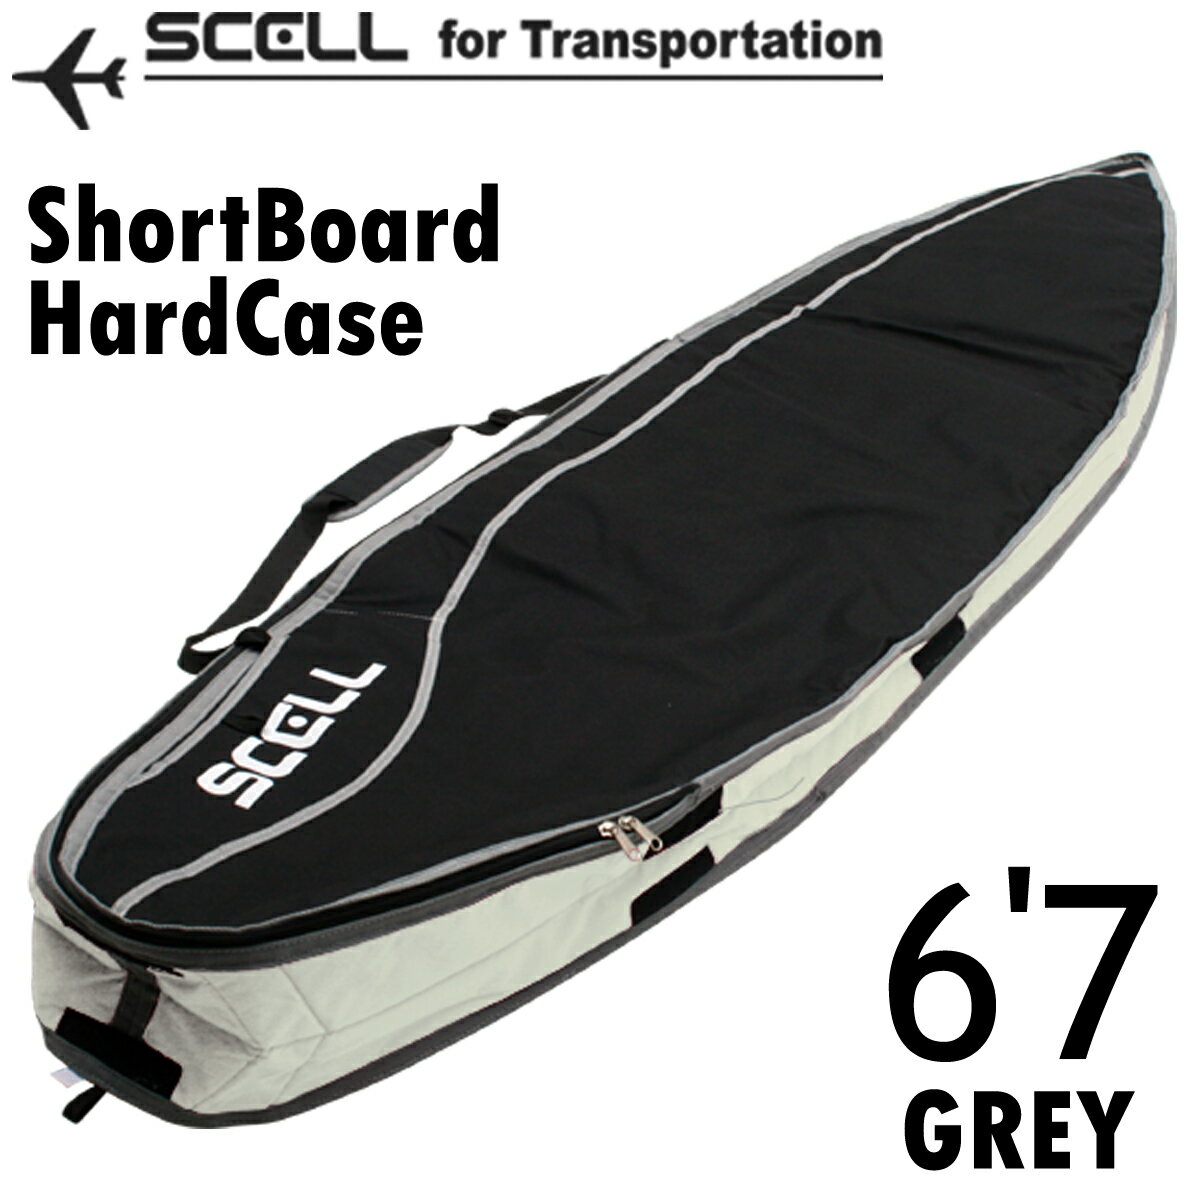 SCELL セル ハードケース 6 039 7 グレー GREY ショートボード SHORT ボードケース ポケット付 フィン付けたまま収納可能 取り外し可能なショルダーストラップ サーフィン サーフボード SURFING SURFBOARD マリンスポーツ 海 アクティビティ 初心者 ビギナー